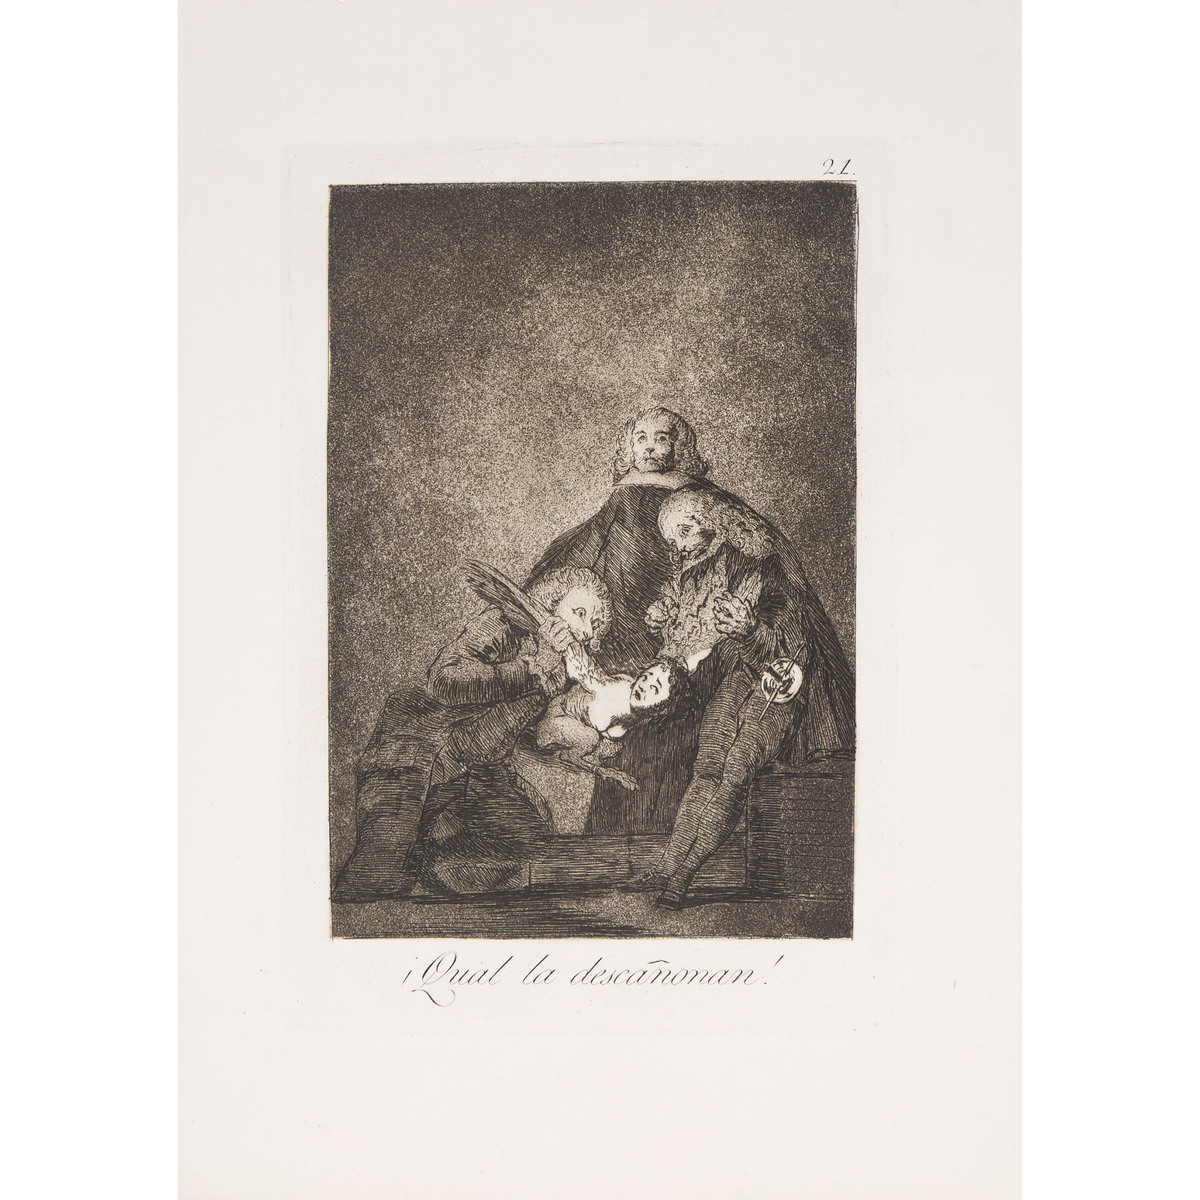 Francisco José de Goya y Lucientes (1746-1828), LOS CAPRICHOS, CA. 1855-1878 [D. 40-111; H. 38-109], - Image 12 of 55